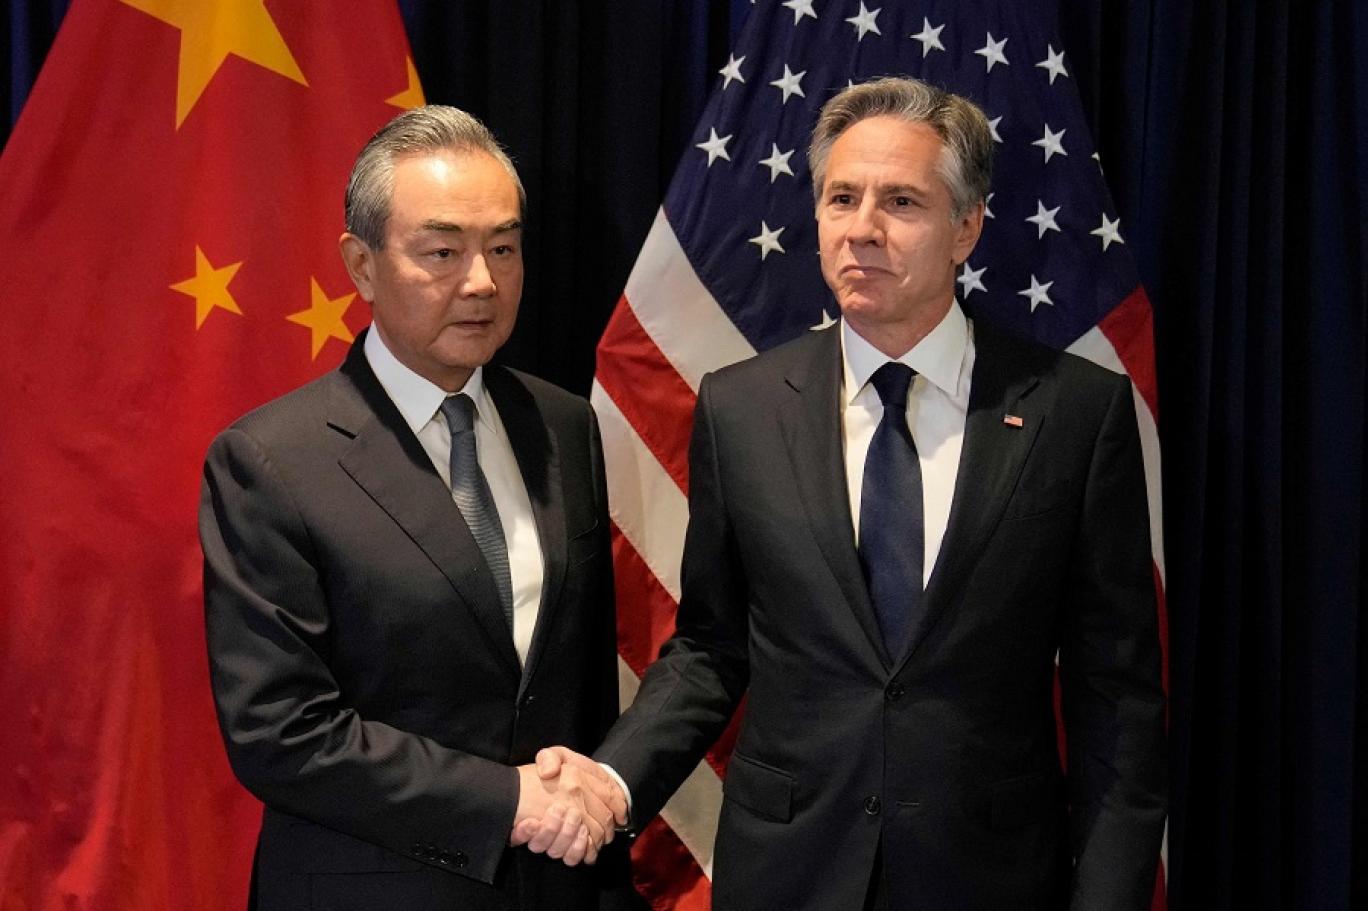 كان تشين يلعب دورا بارزا في جهود الولايات المتحدة والصين لاستعادة الاتصال بعضهما ببعض - إنترنت